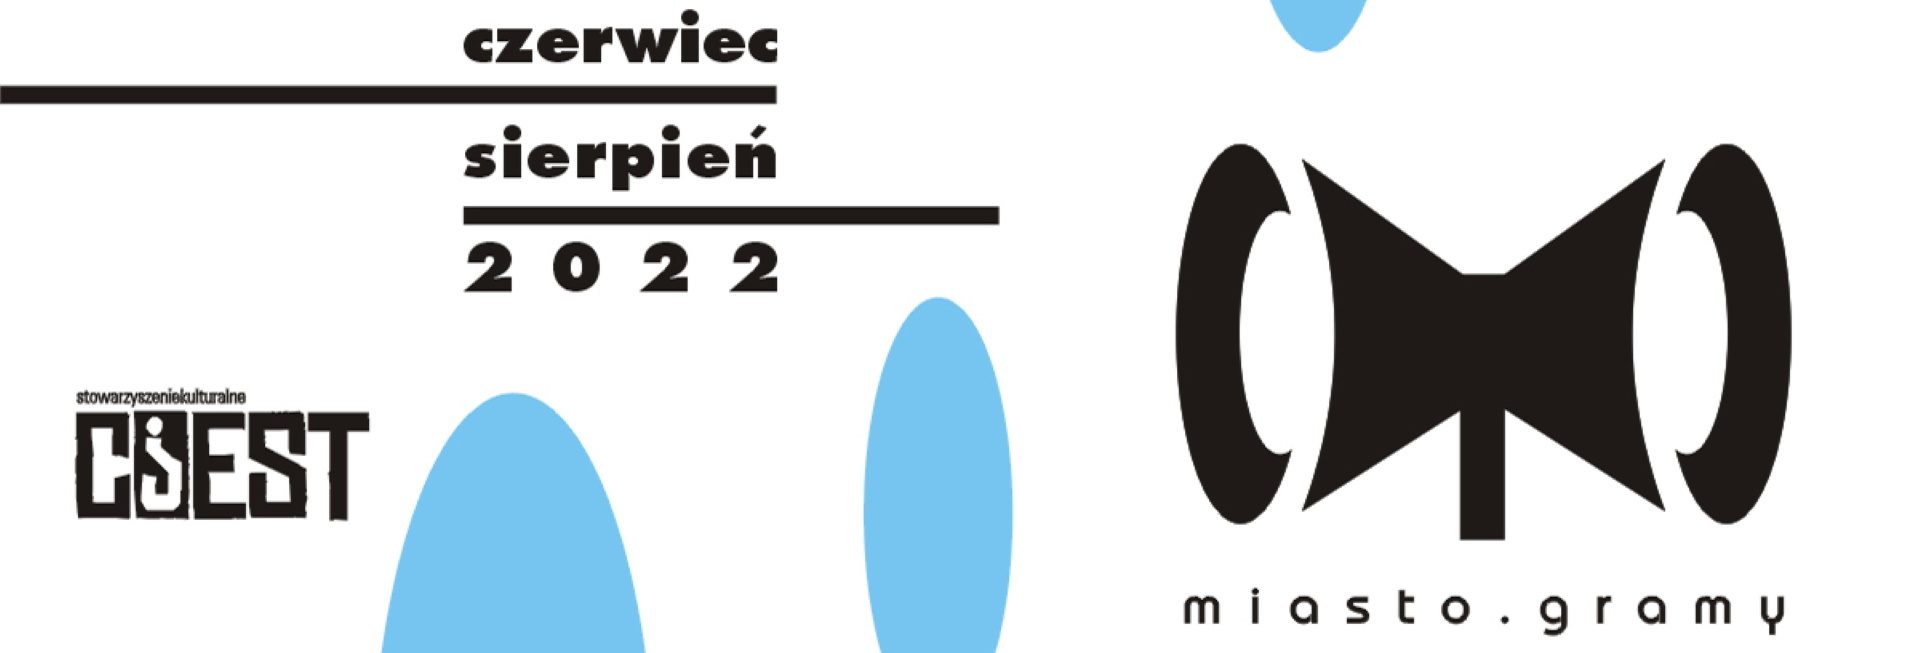 Plakat graficzny zapraszający do Elbląga na cykl koncertów Miasto.Gramy Elbląg 2022.